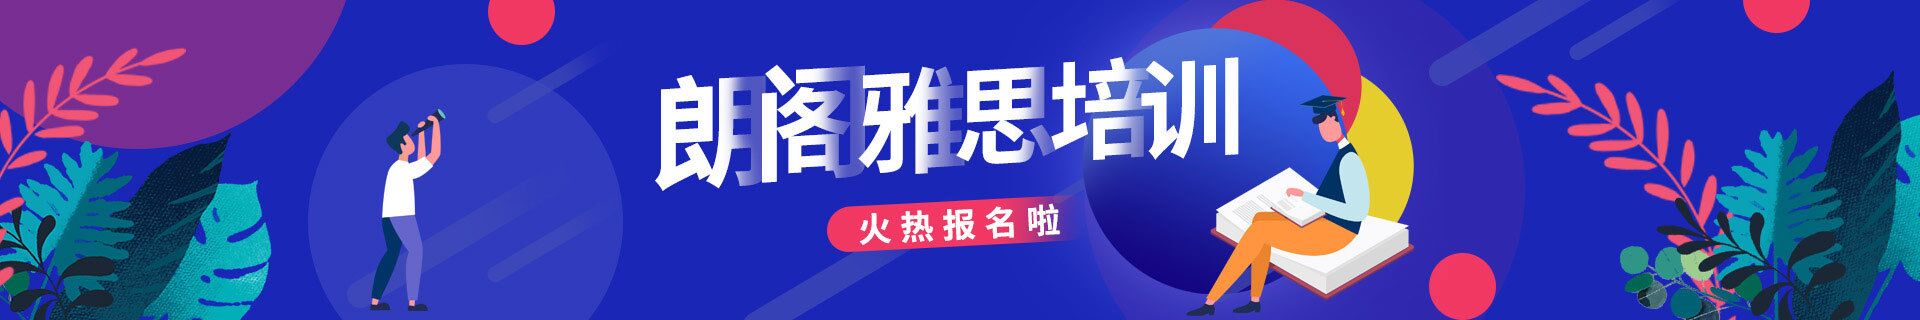 上海长宁区三立精选教育培训机构